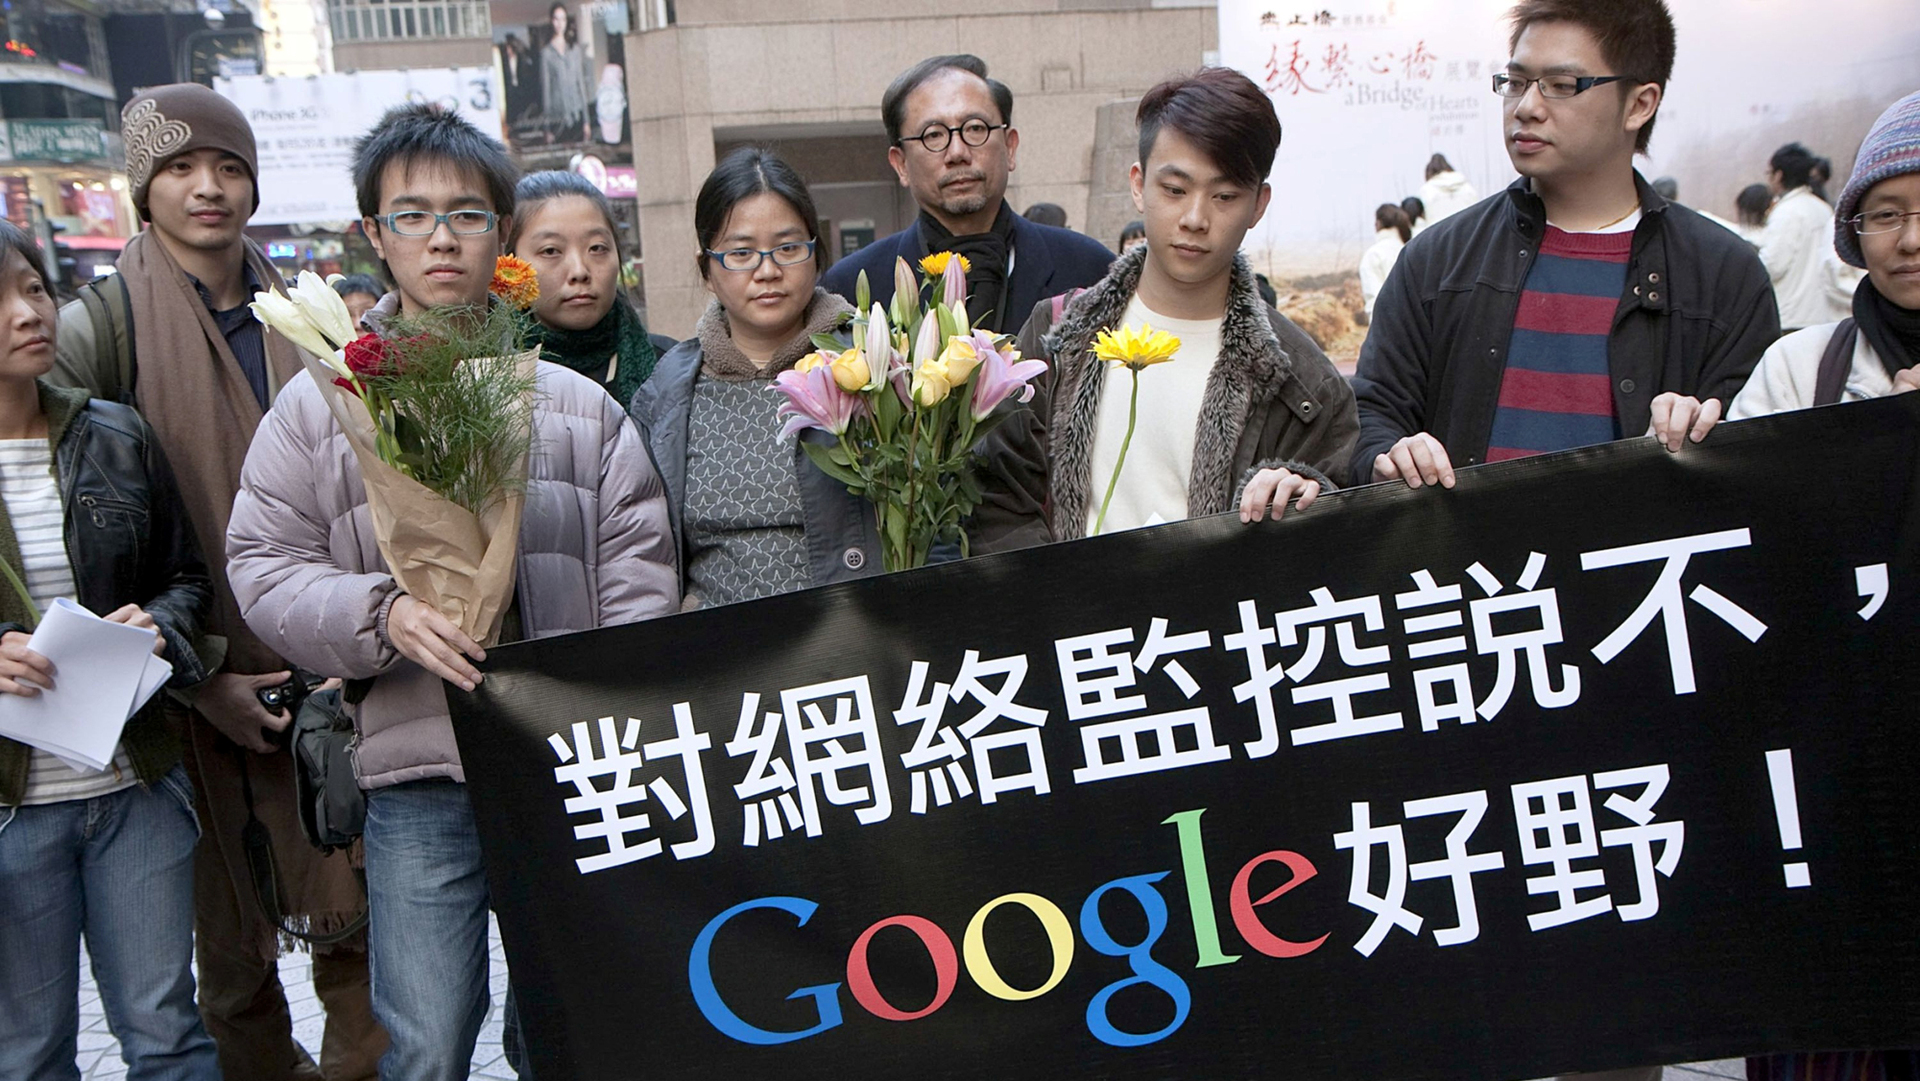 מחאה נגד גוגל ב הונג קונג